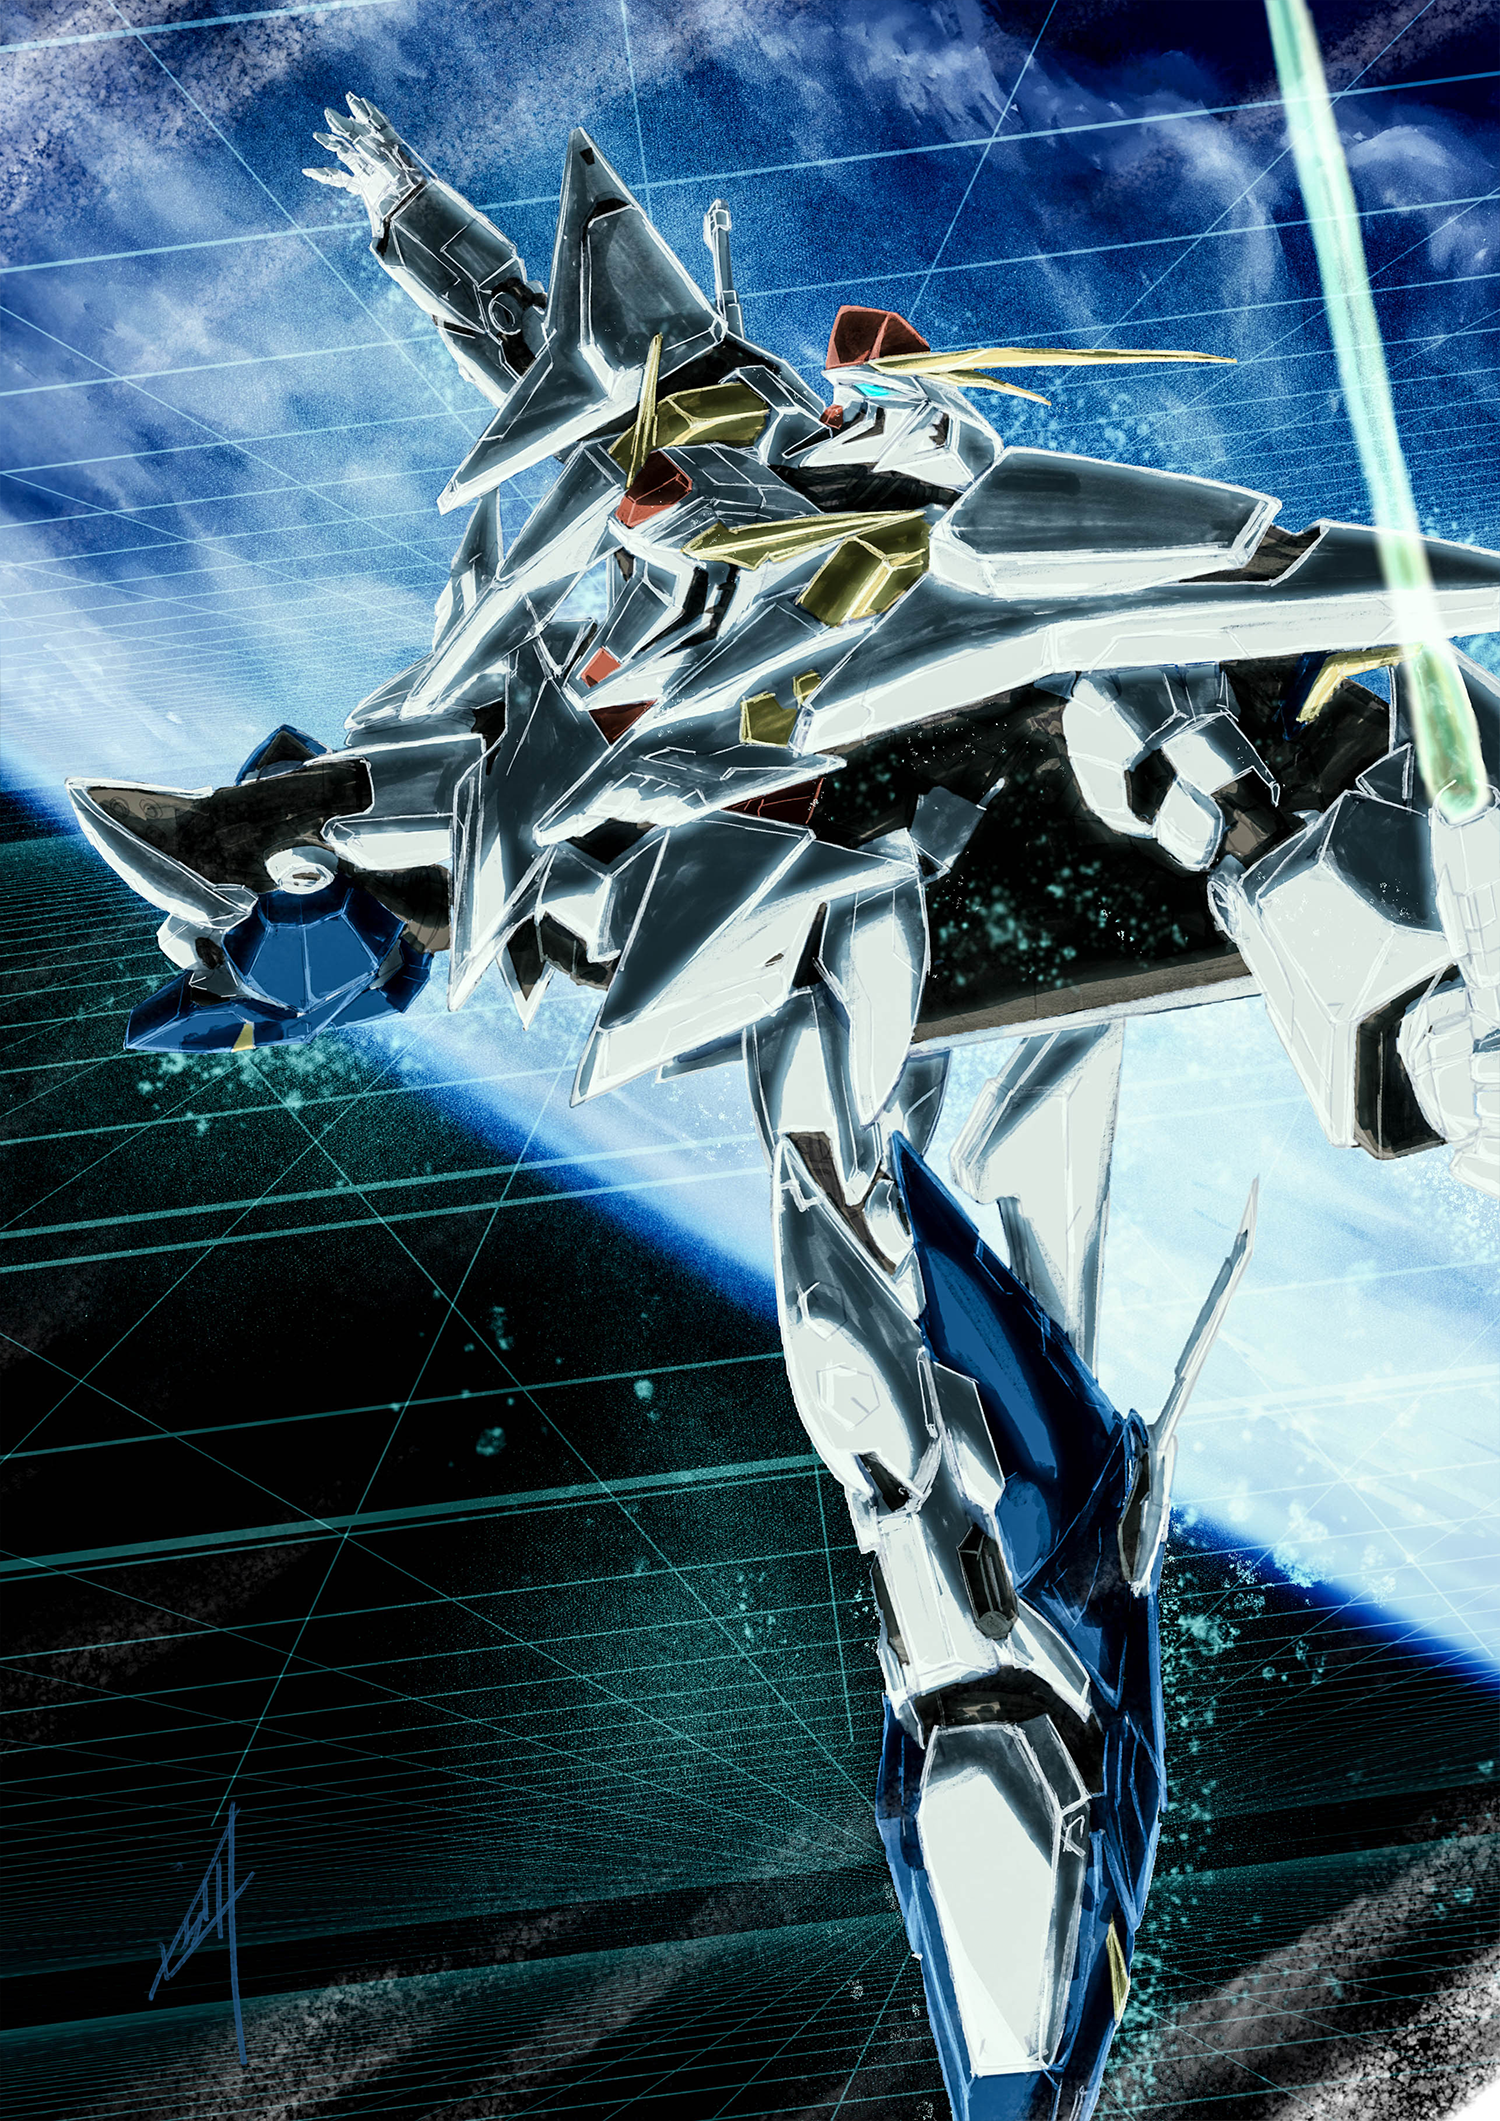 Anime 1500x2121 anime mechs Super Robot Taisen Mobile Suit Gundam Hathaway Gundam Ξ Gundam artwork digital art fan art